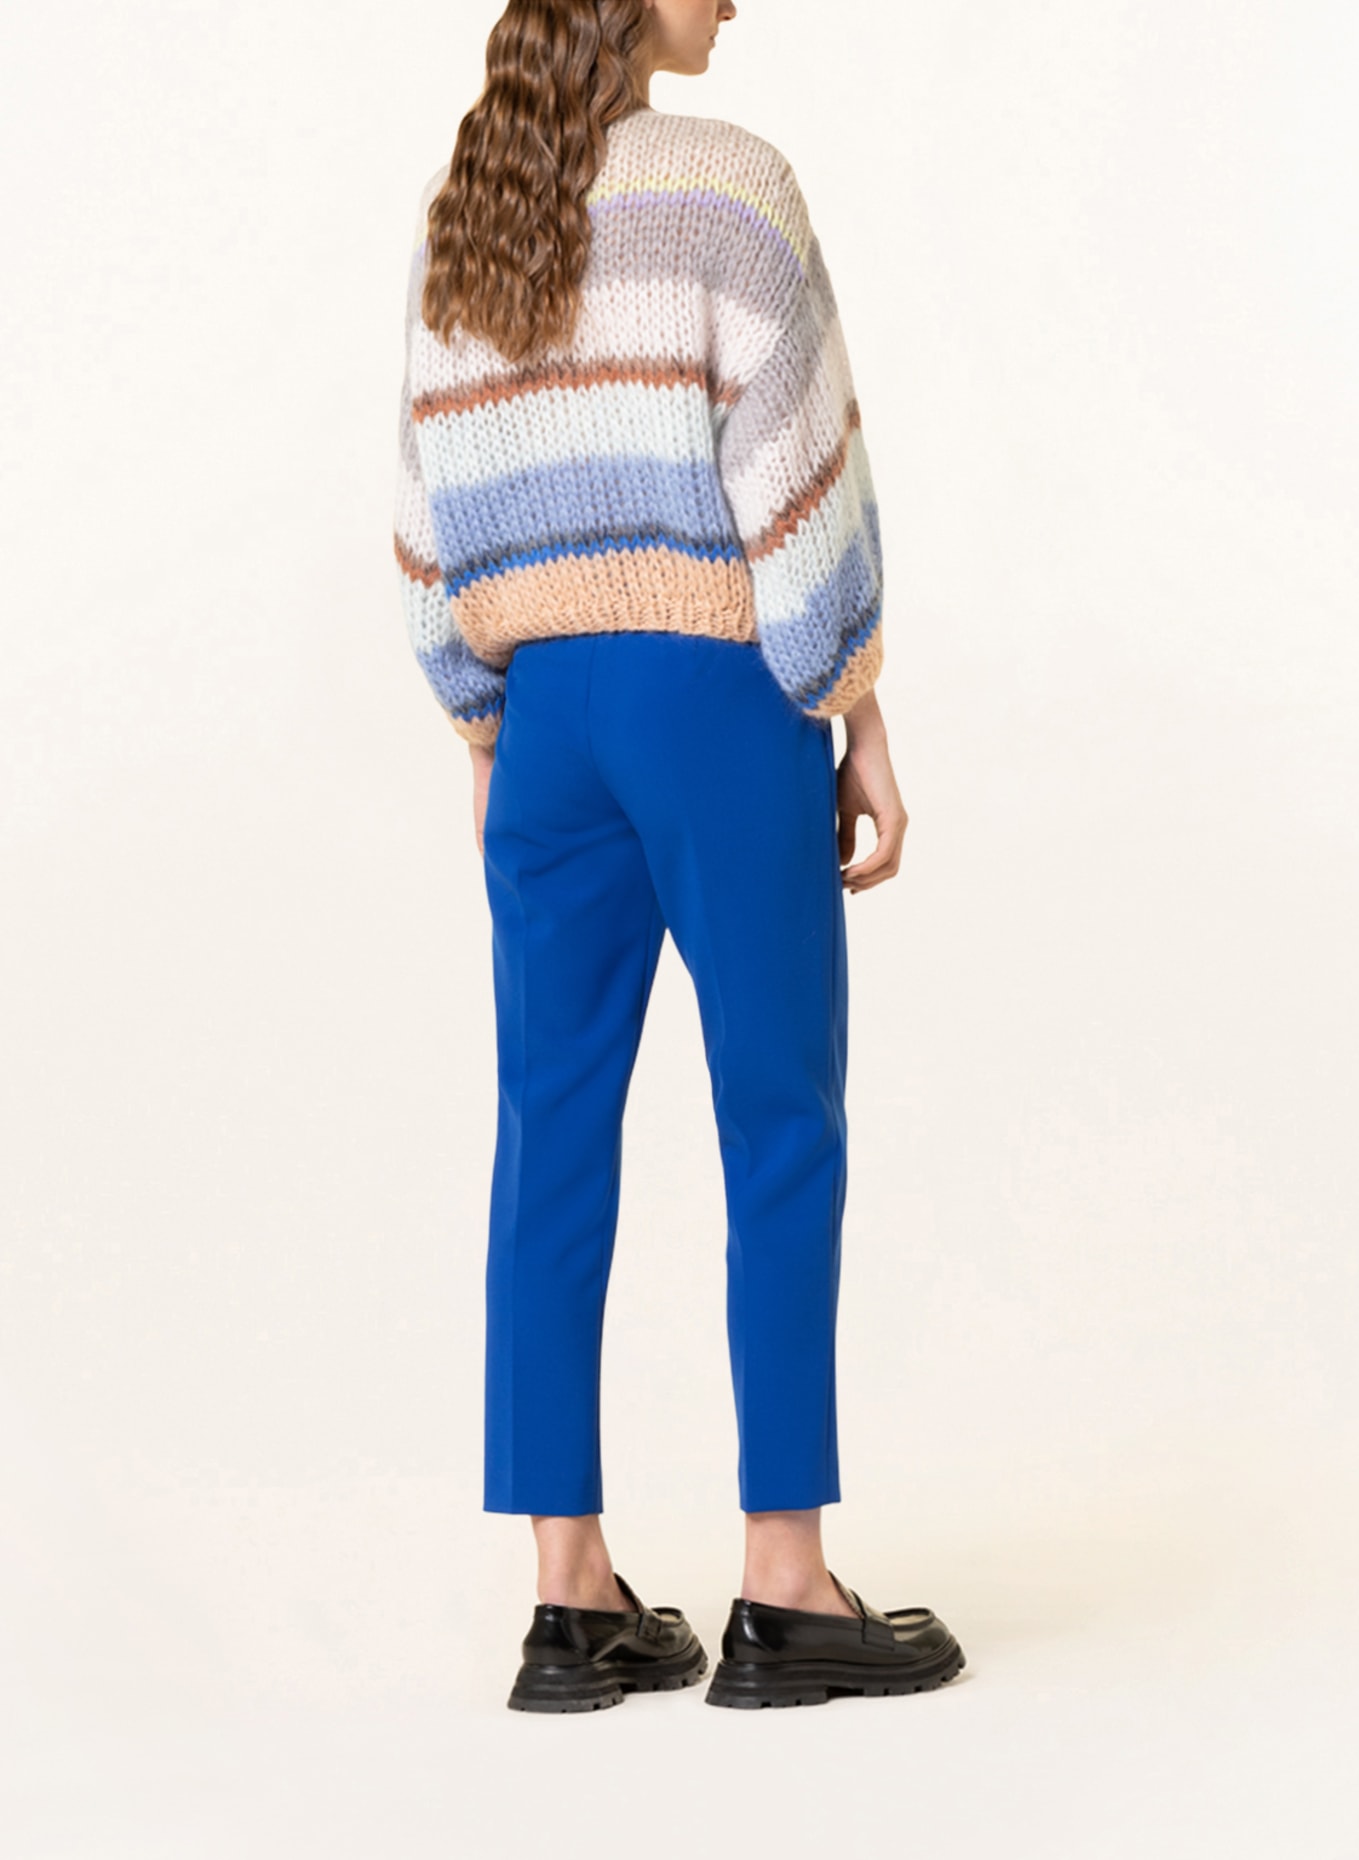 MAIAMI Pullover mit Mohair, Farbe: WEISS/ GRAU/ BLAU (Bild 3)